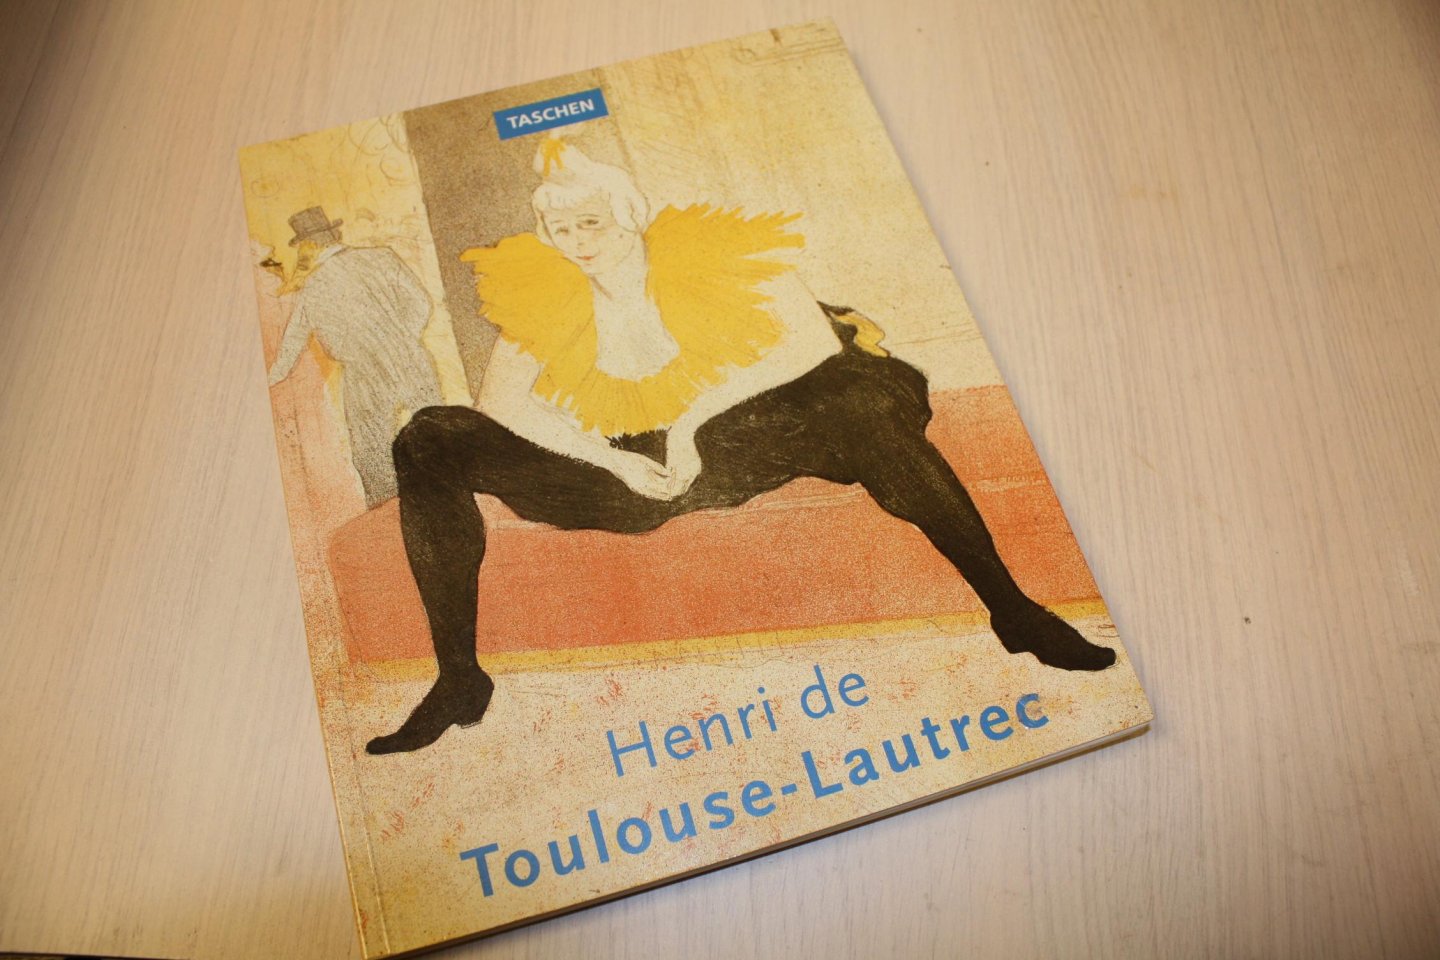 Henri de Toulouse-Lautrec - Henri de Toulouse-Lautrec 1864-1901